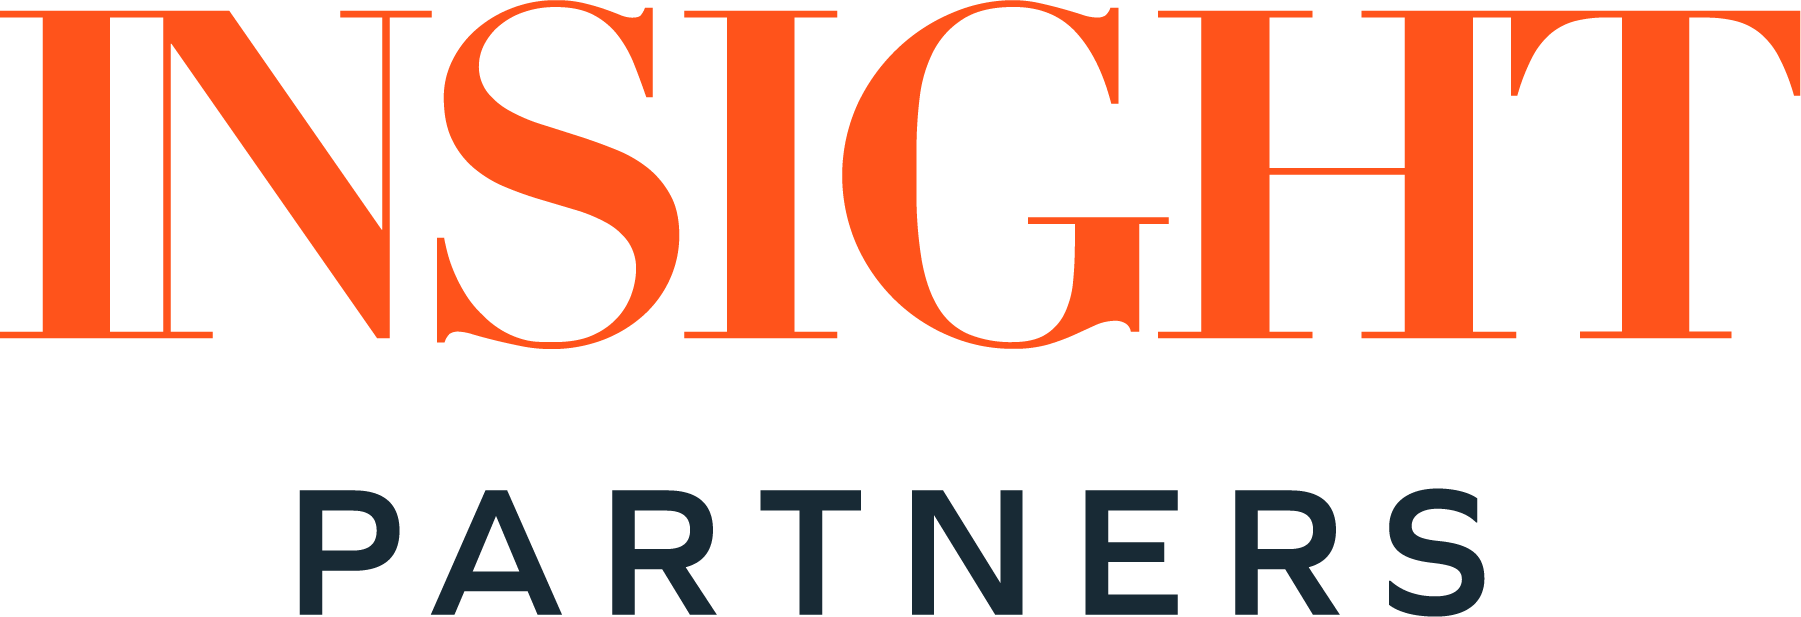 Insight partners logo